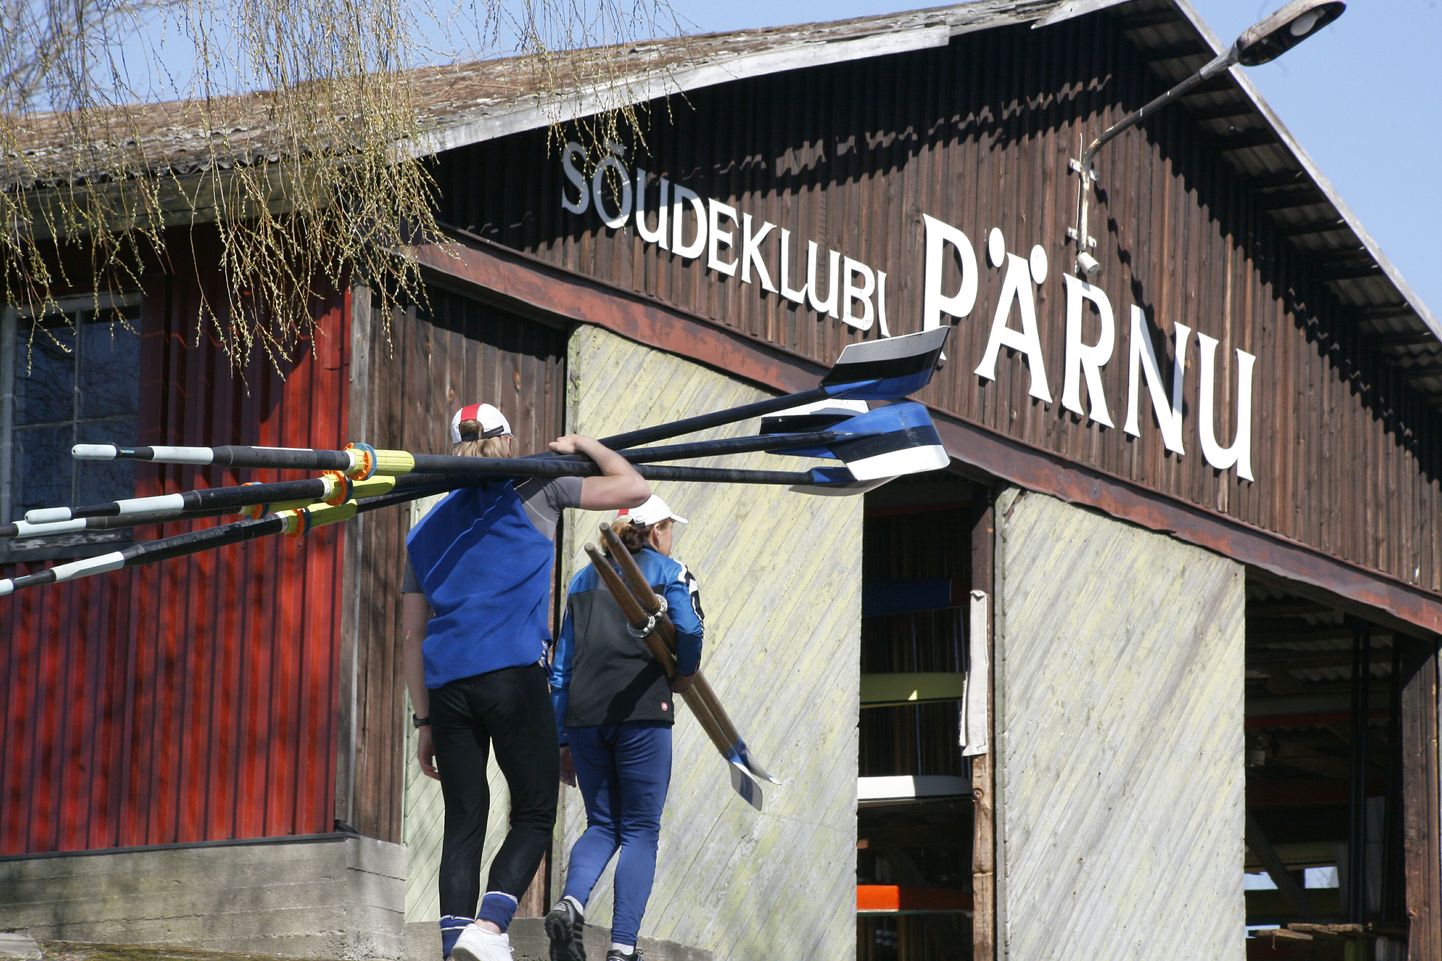 Järgnevad viis aastat saab sõudeklubi Pärnu sõudebaasi prii pärast kasutada.